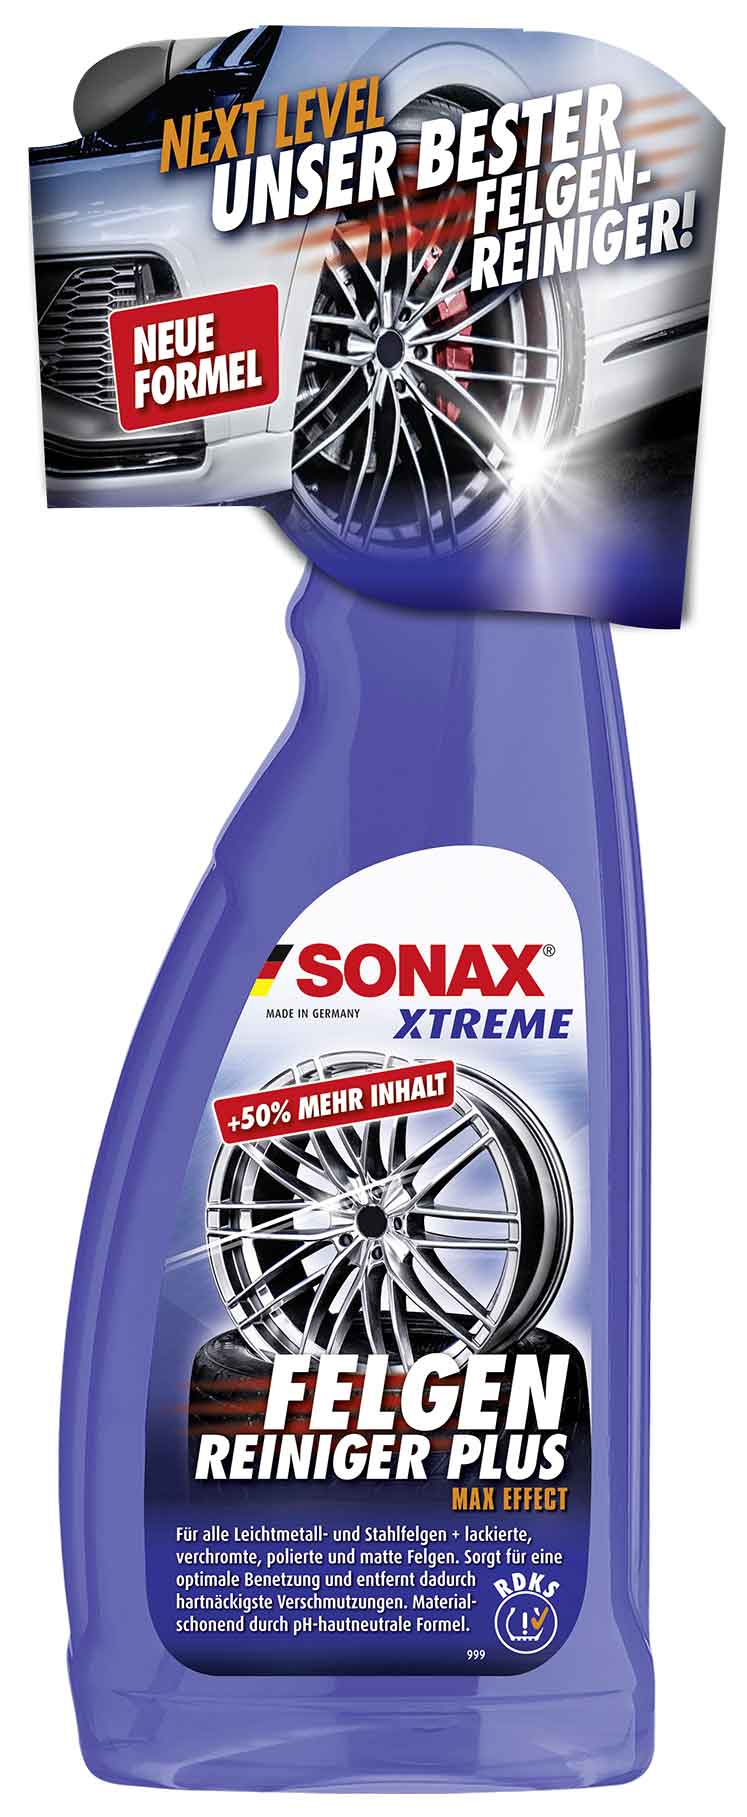 SONAX XTREME Shampoo 2 in 1 FelgenReiniger PLUS ScheibenReiniger Sommer gebrauchsfertig 3L ReifenGlanzSpray Wet Look AutoInnenReiniger